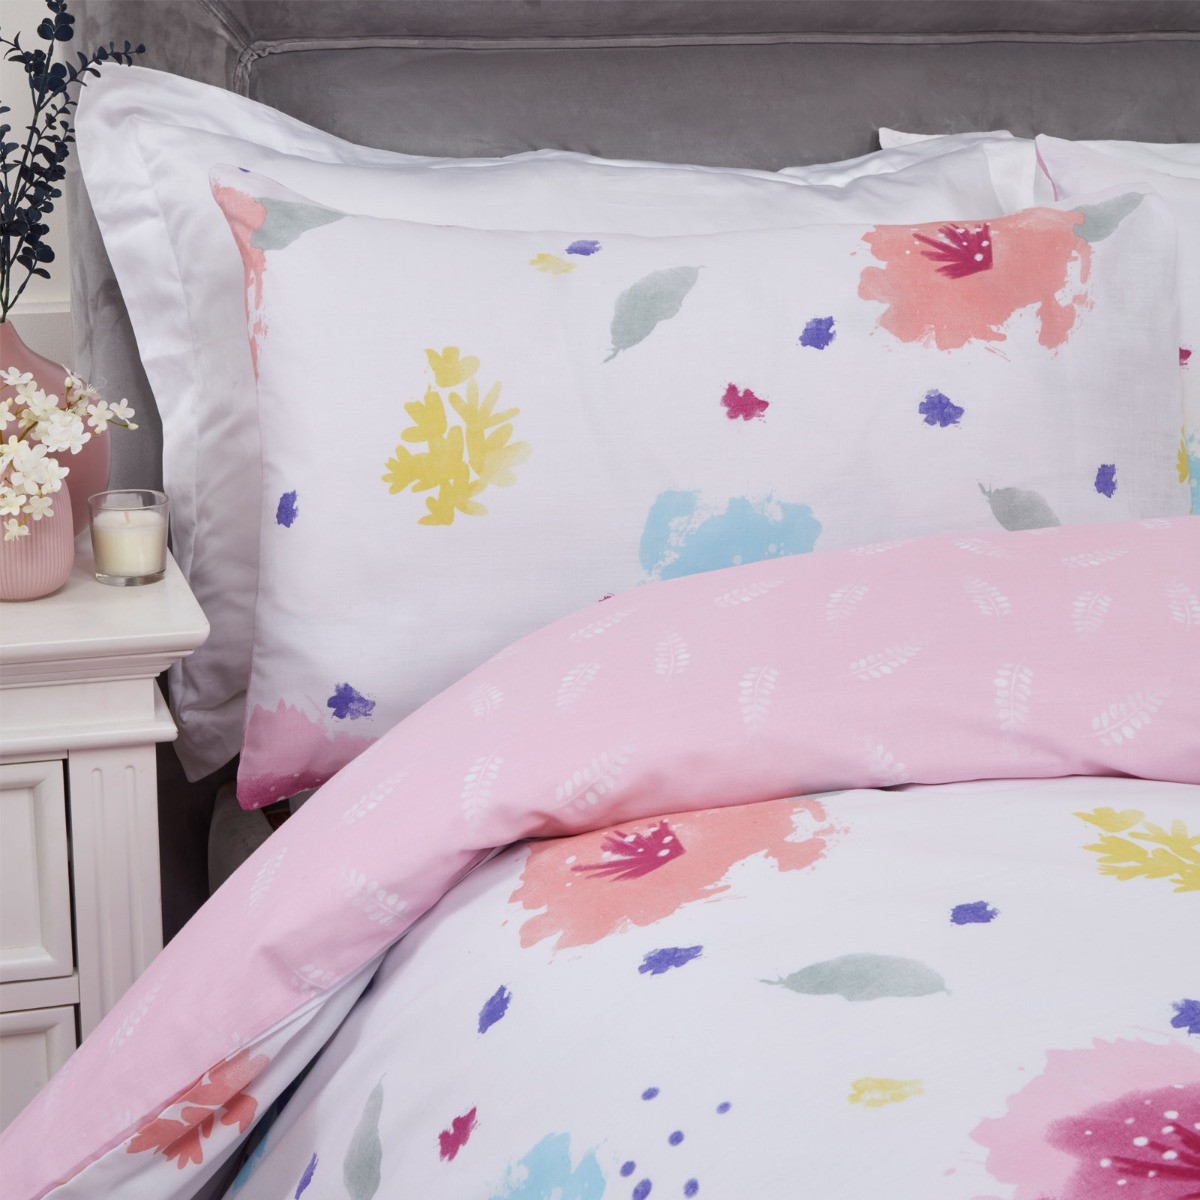 Dreamscene Watercolour Floral Duvet Cover Set - Blush>